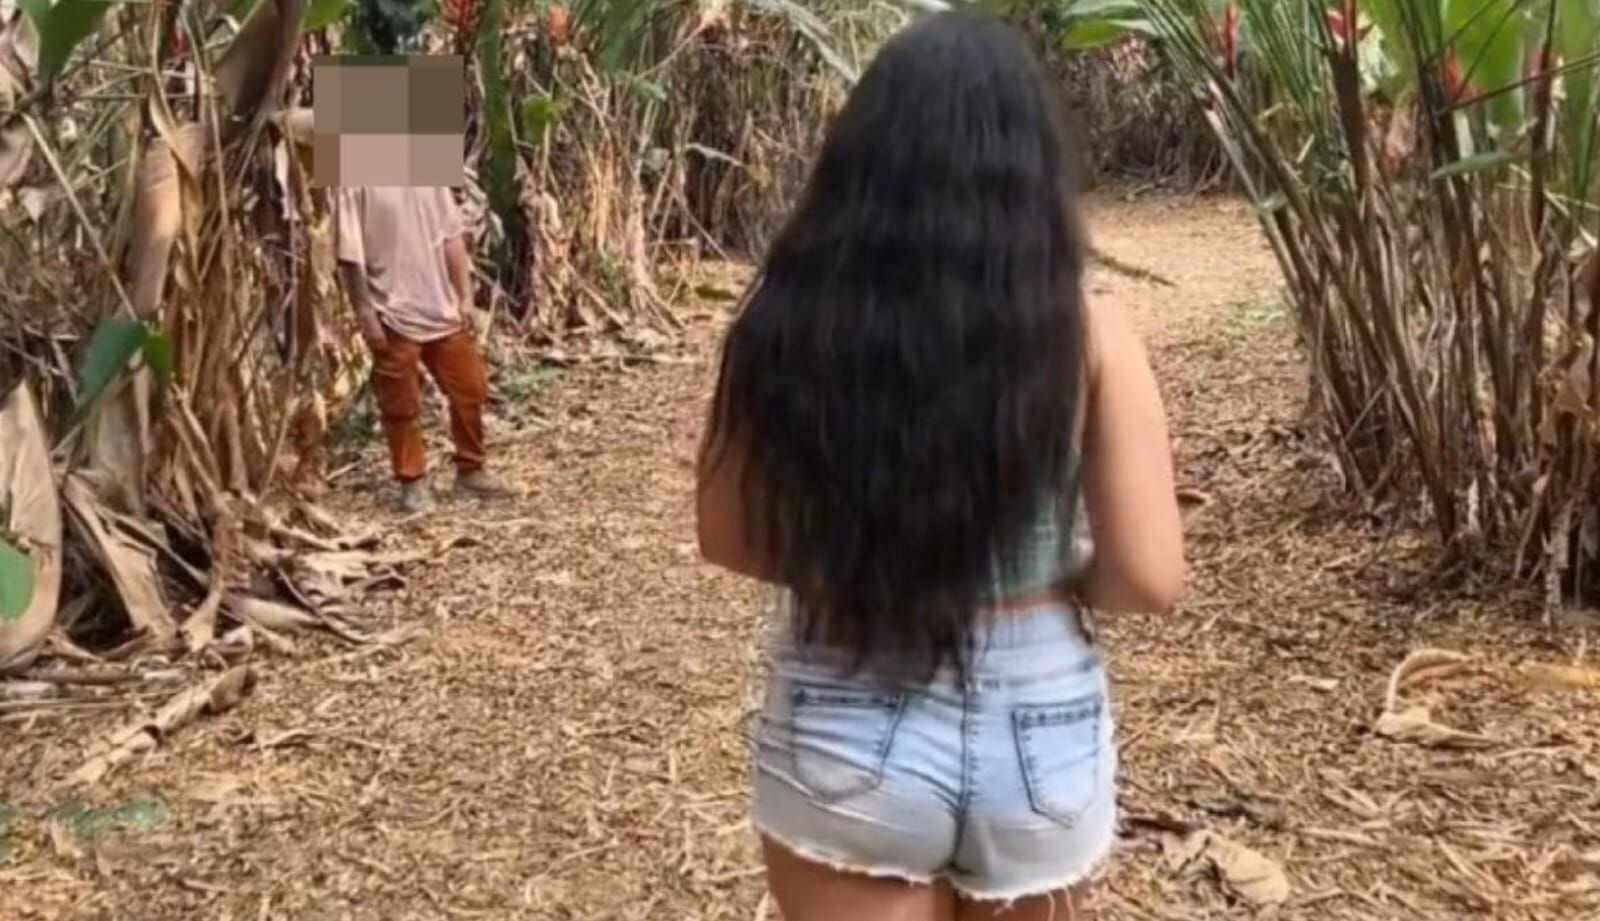 actriz de video porno que grabaron en bucaramanga dice que tenían permiso